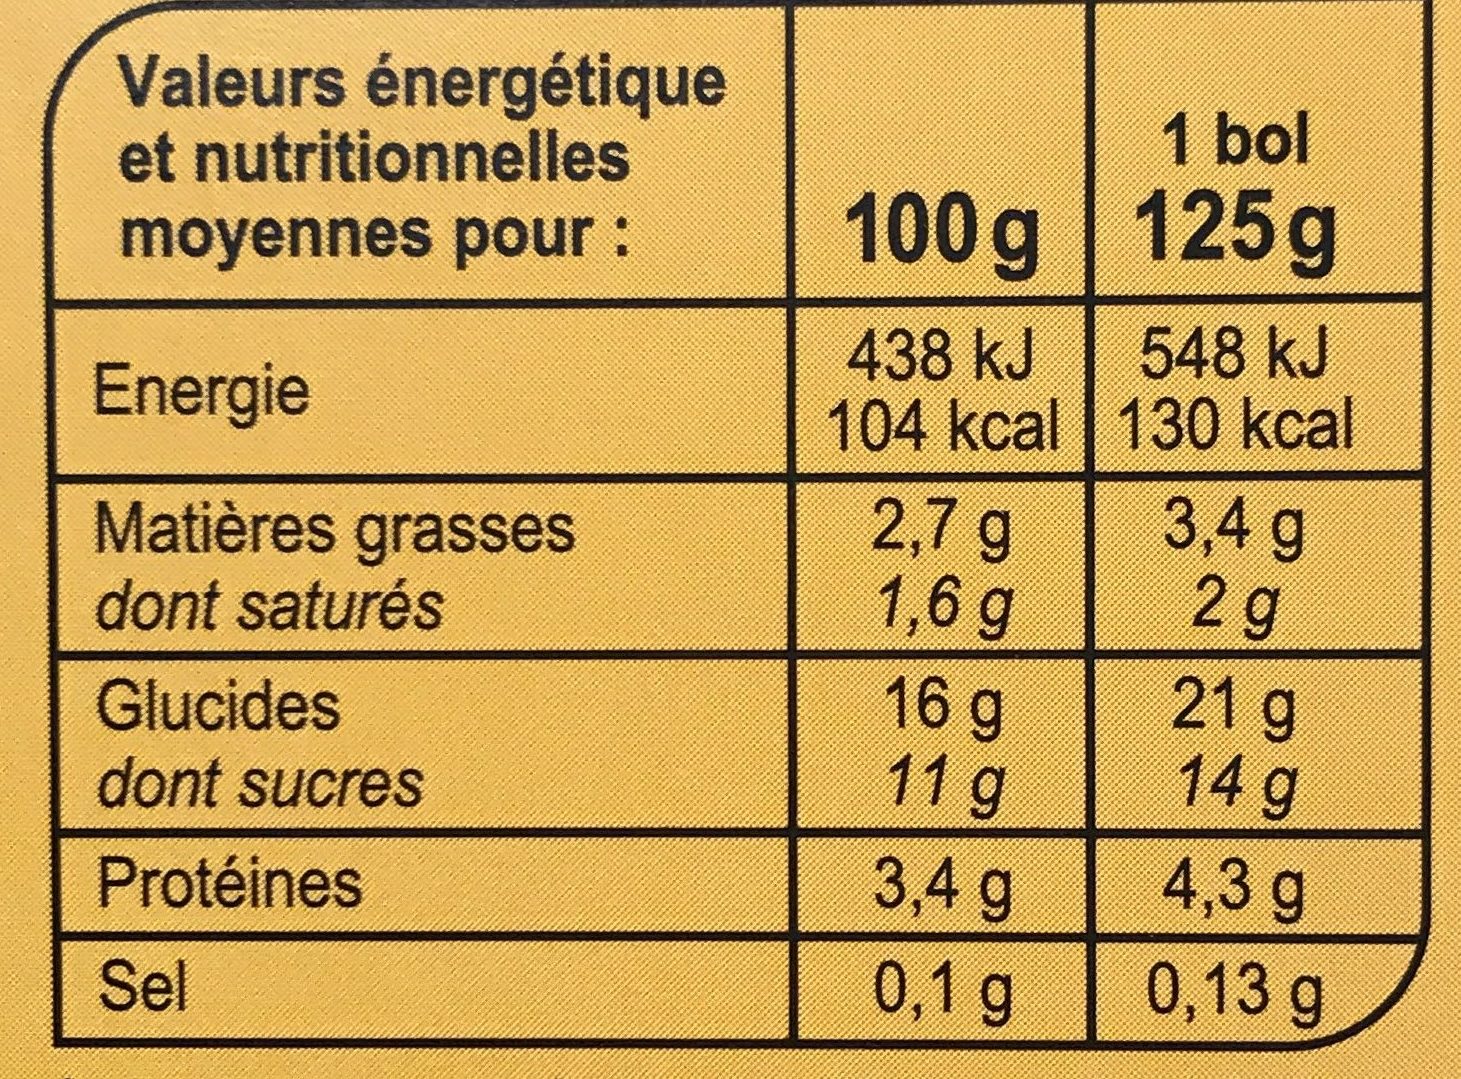 Onctueux de Semoule à la Fleur d'Oranger - Nutrition facts - fr